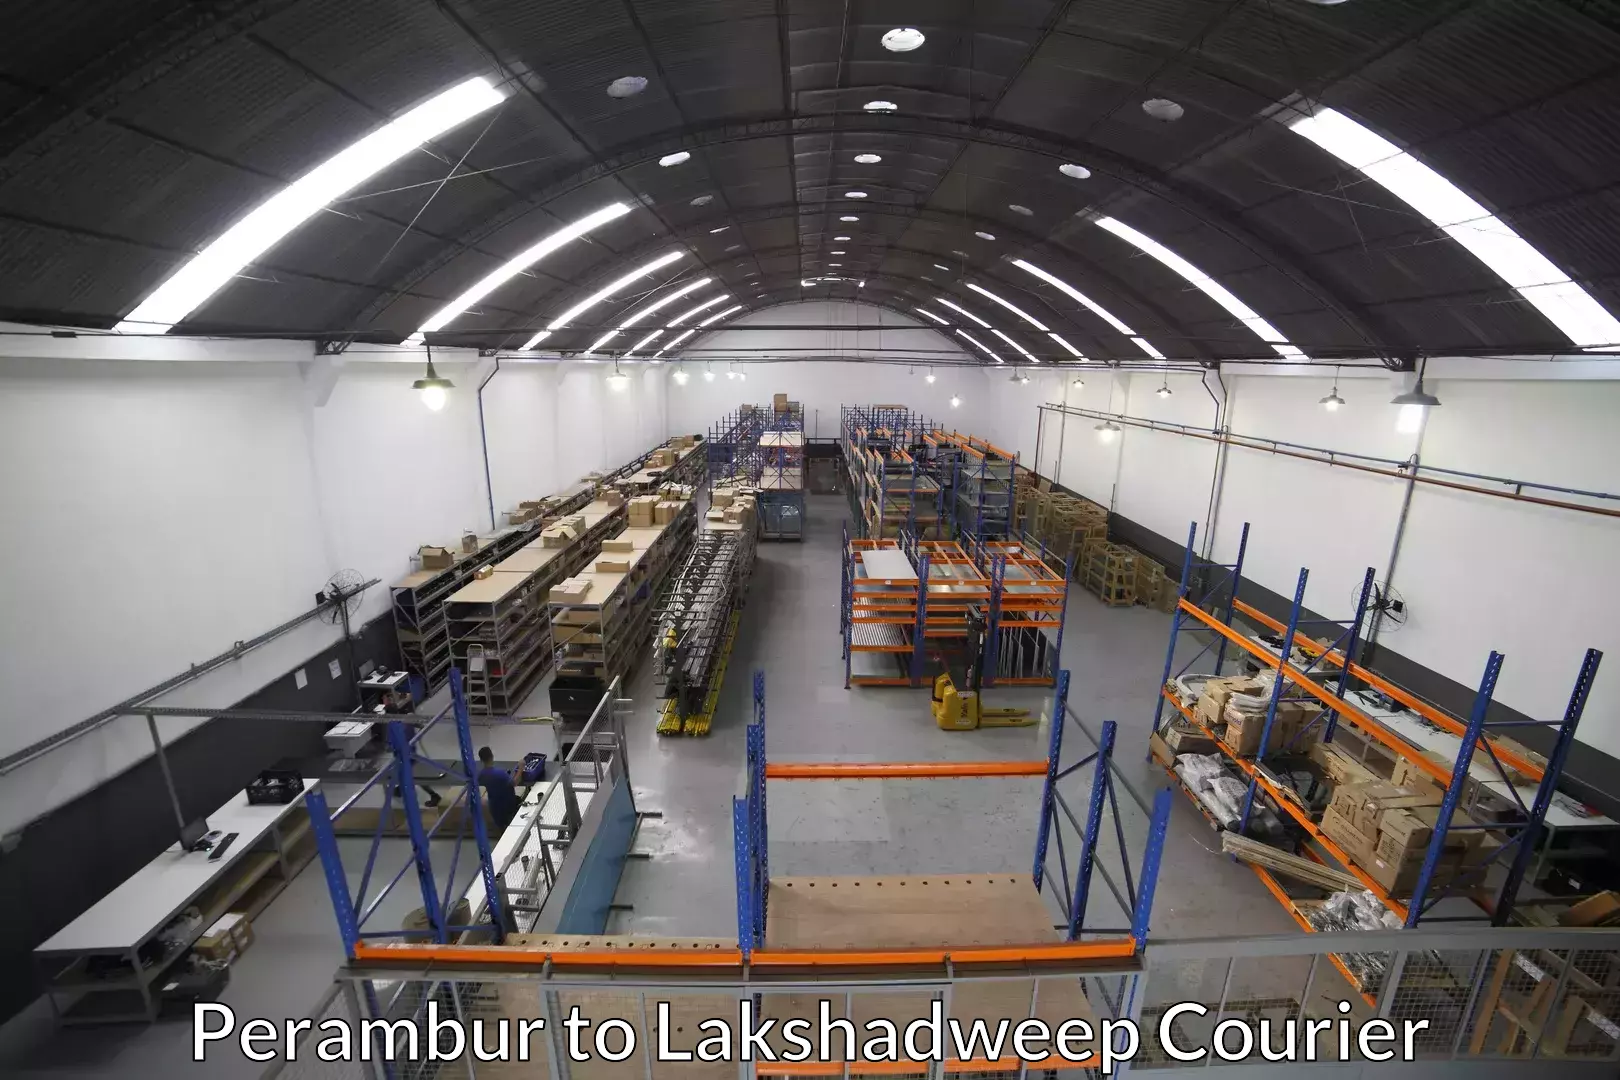 Furniture moving service Perambur to Lakshadweep